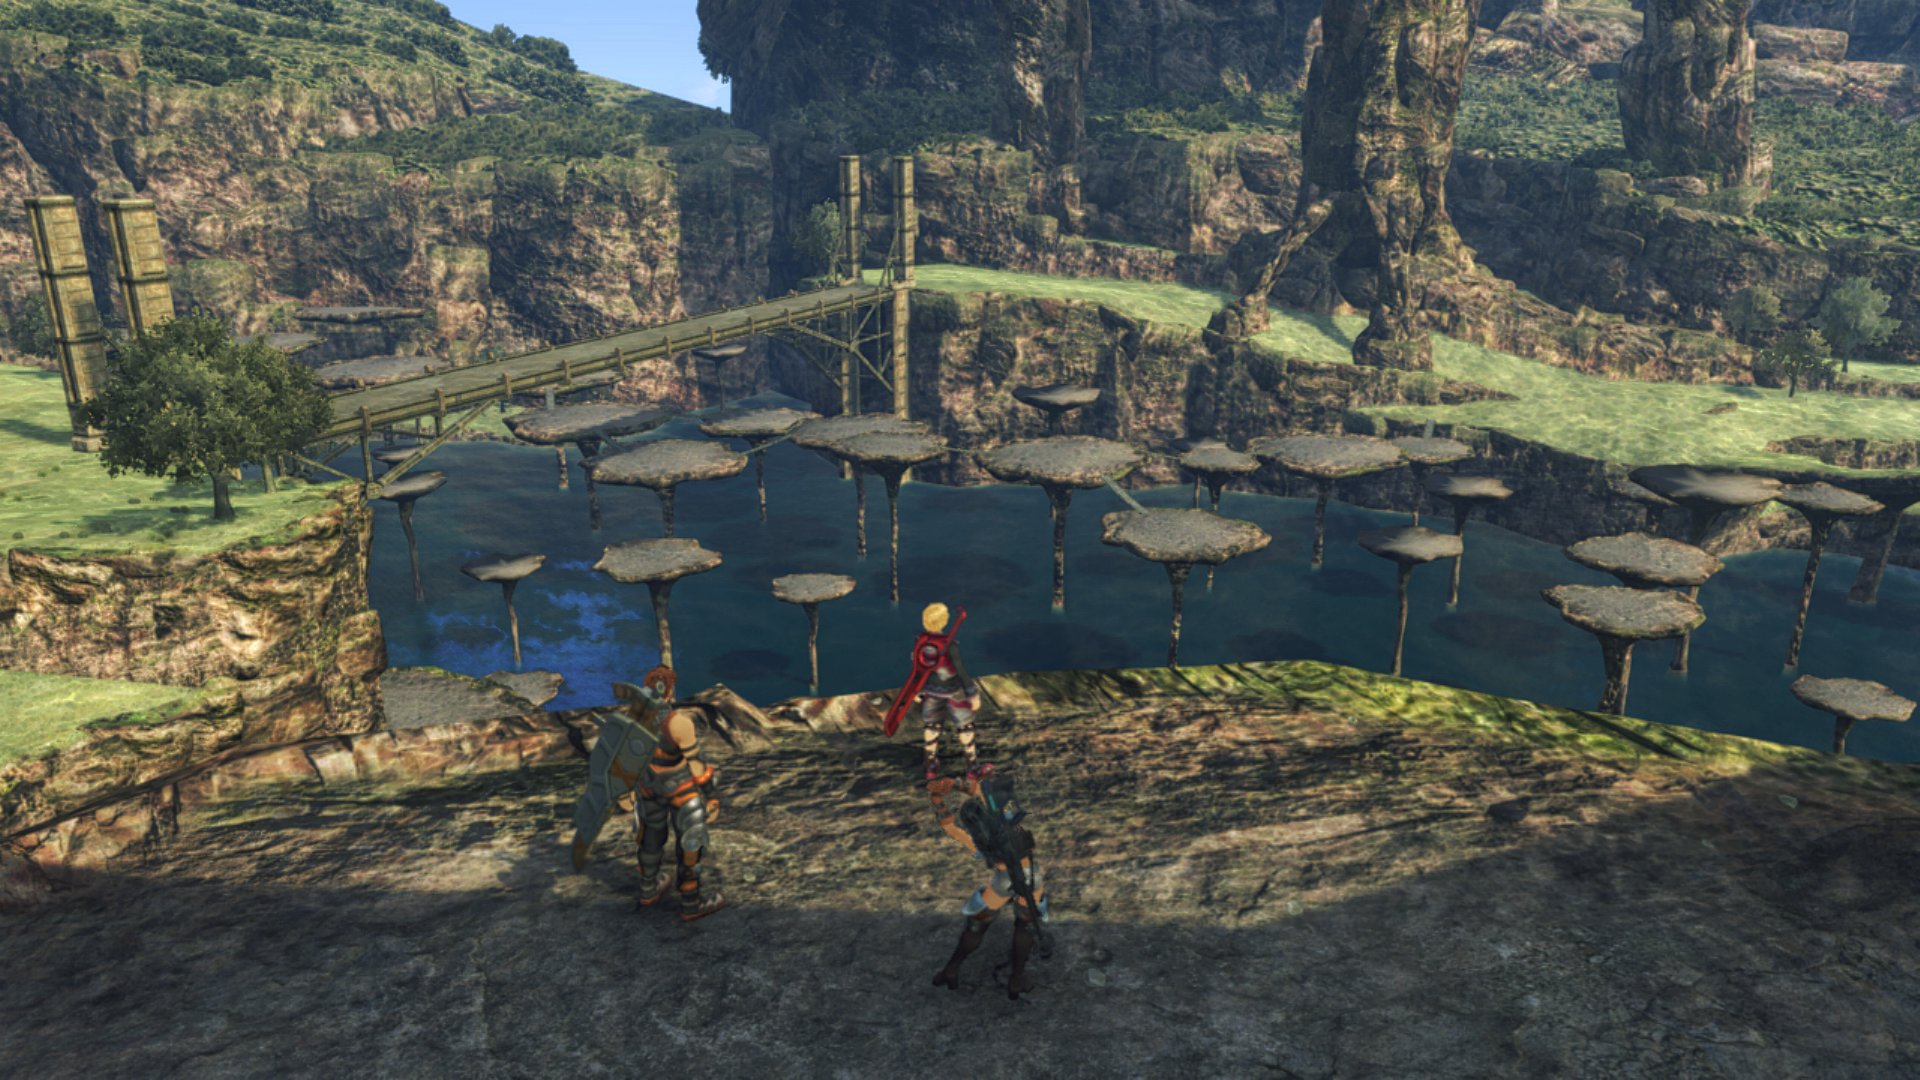 《异度神剑:终极版》实机截图放出 新旧版画面对比强烈